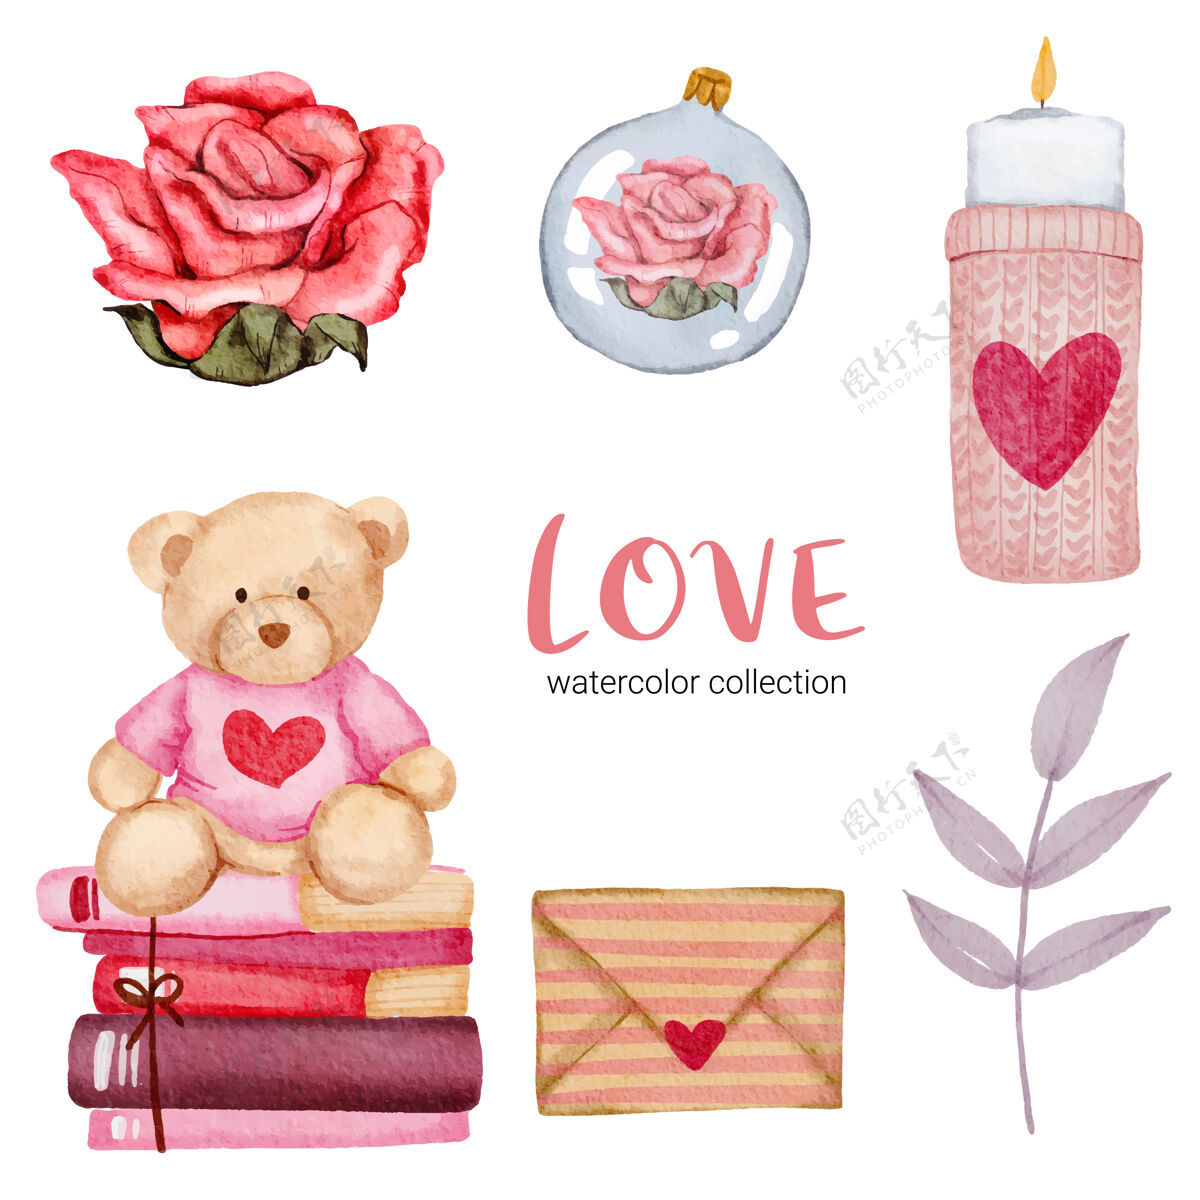 卡片套大孤立的水彩情人节概念元素可爱浪漫的红粉心形装饰 插画泰迪熊抽象装饰品